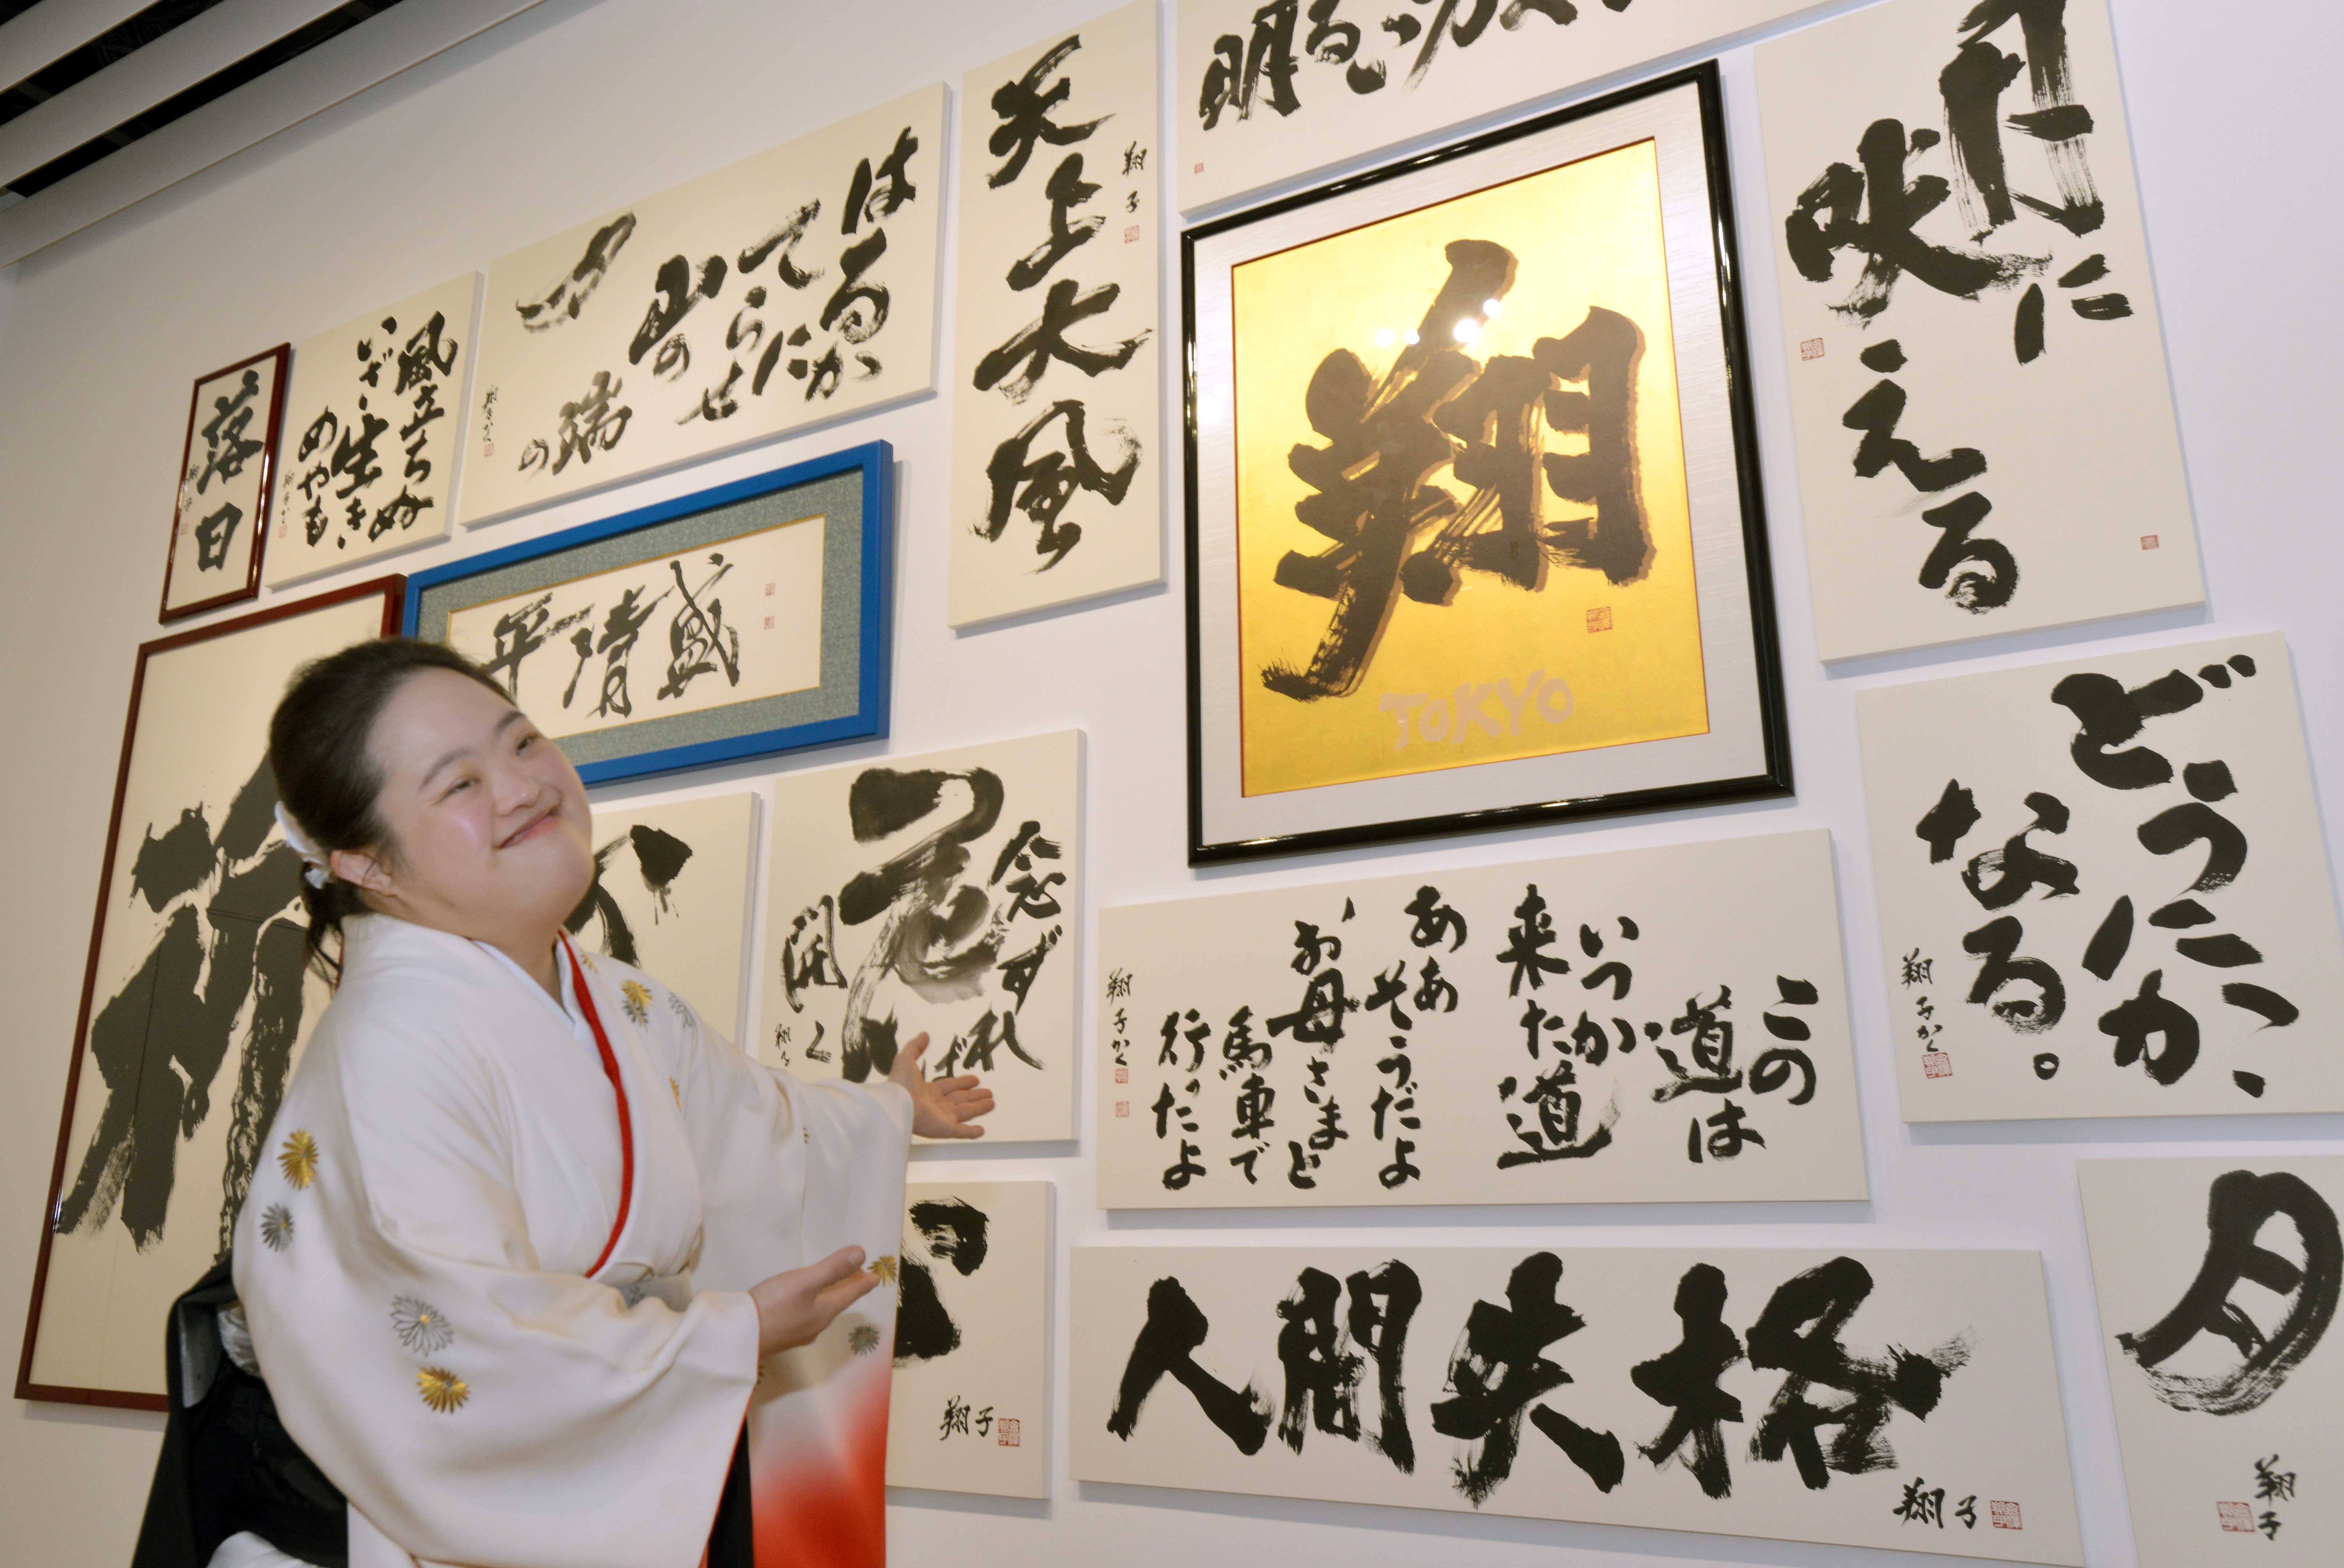 幅１５ｍ超えの大作も ダウン症の書家、金澤翔子さんが個展 - 産経 